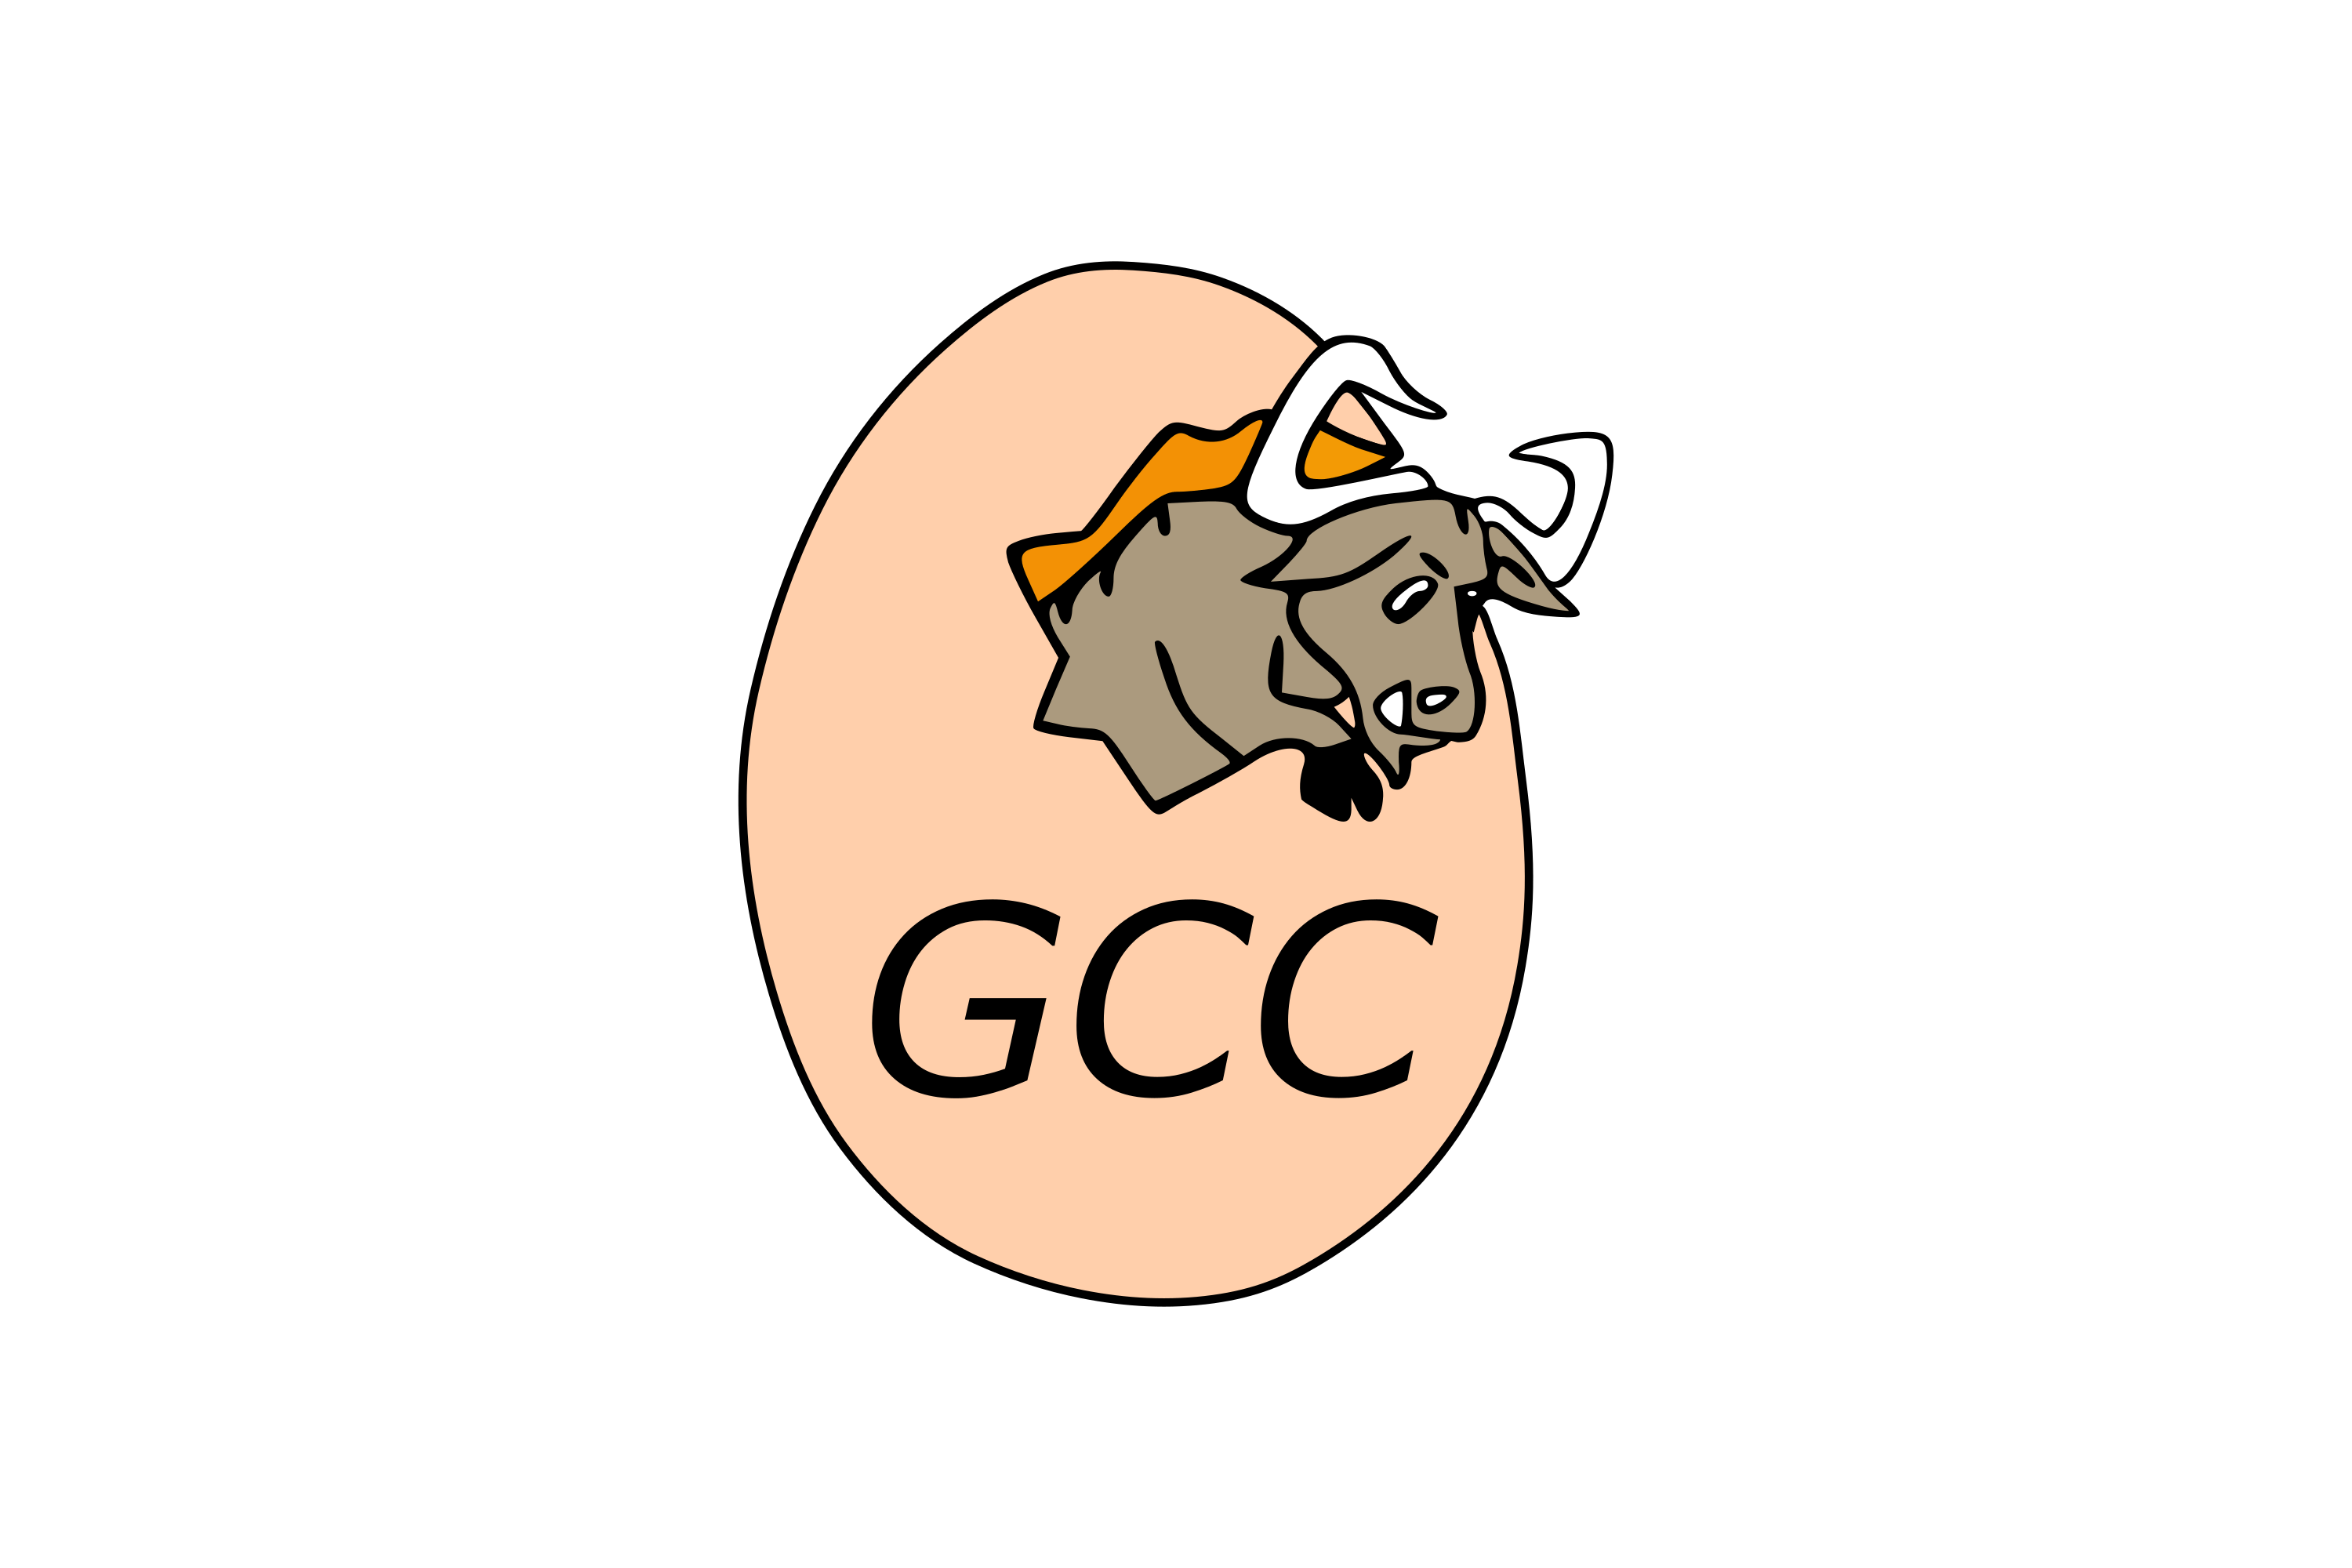 Gnu c compiler gcc. GCC логотип. GCC компилятор. GNU Compiler collection. Логотип GNU.